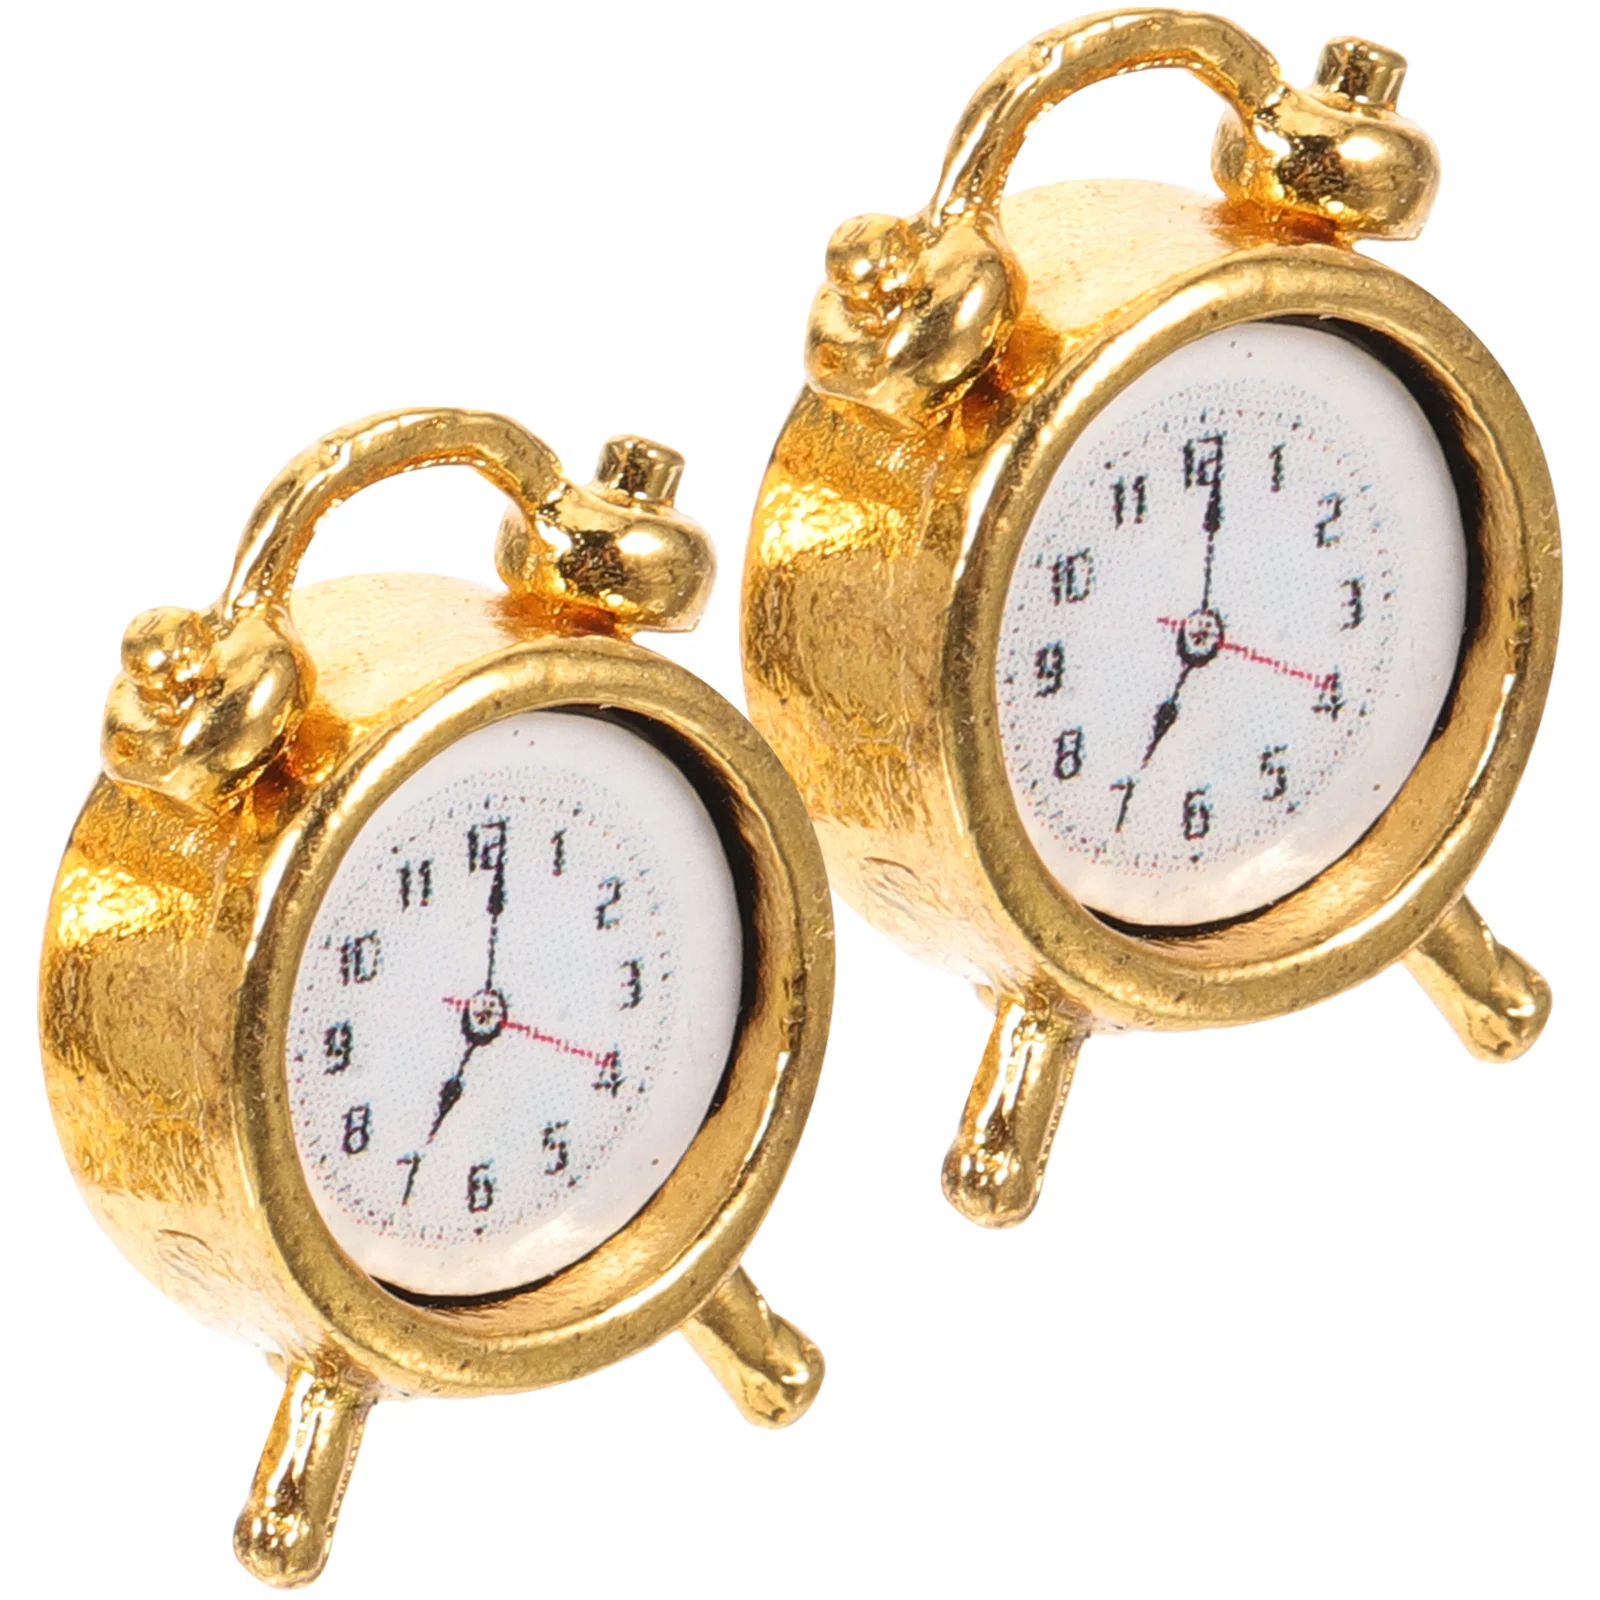 

2 Pcs Mini Toys Alarm Clock Miniature Clocks Decors Accessories Decoration Alloy Ornament Model Travel